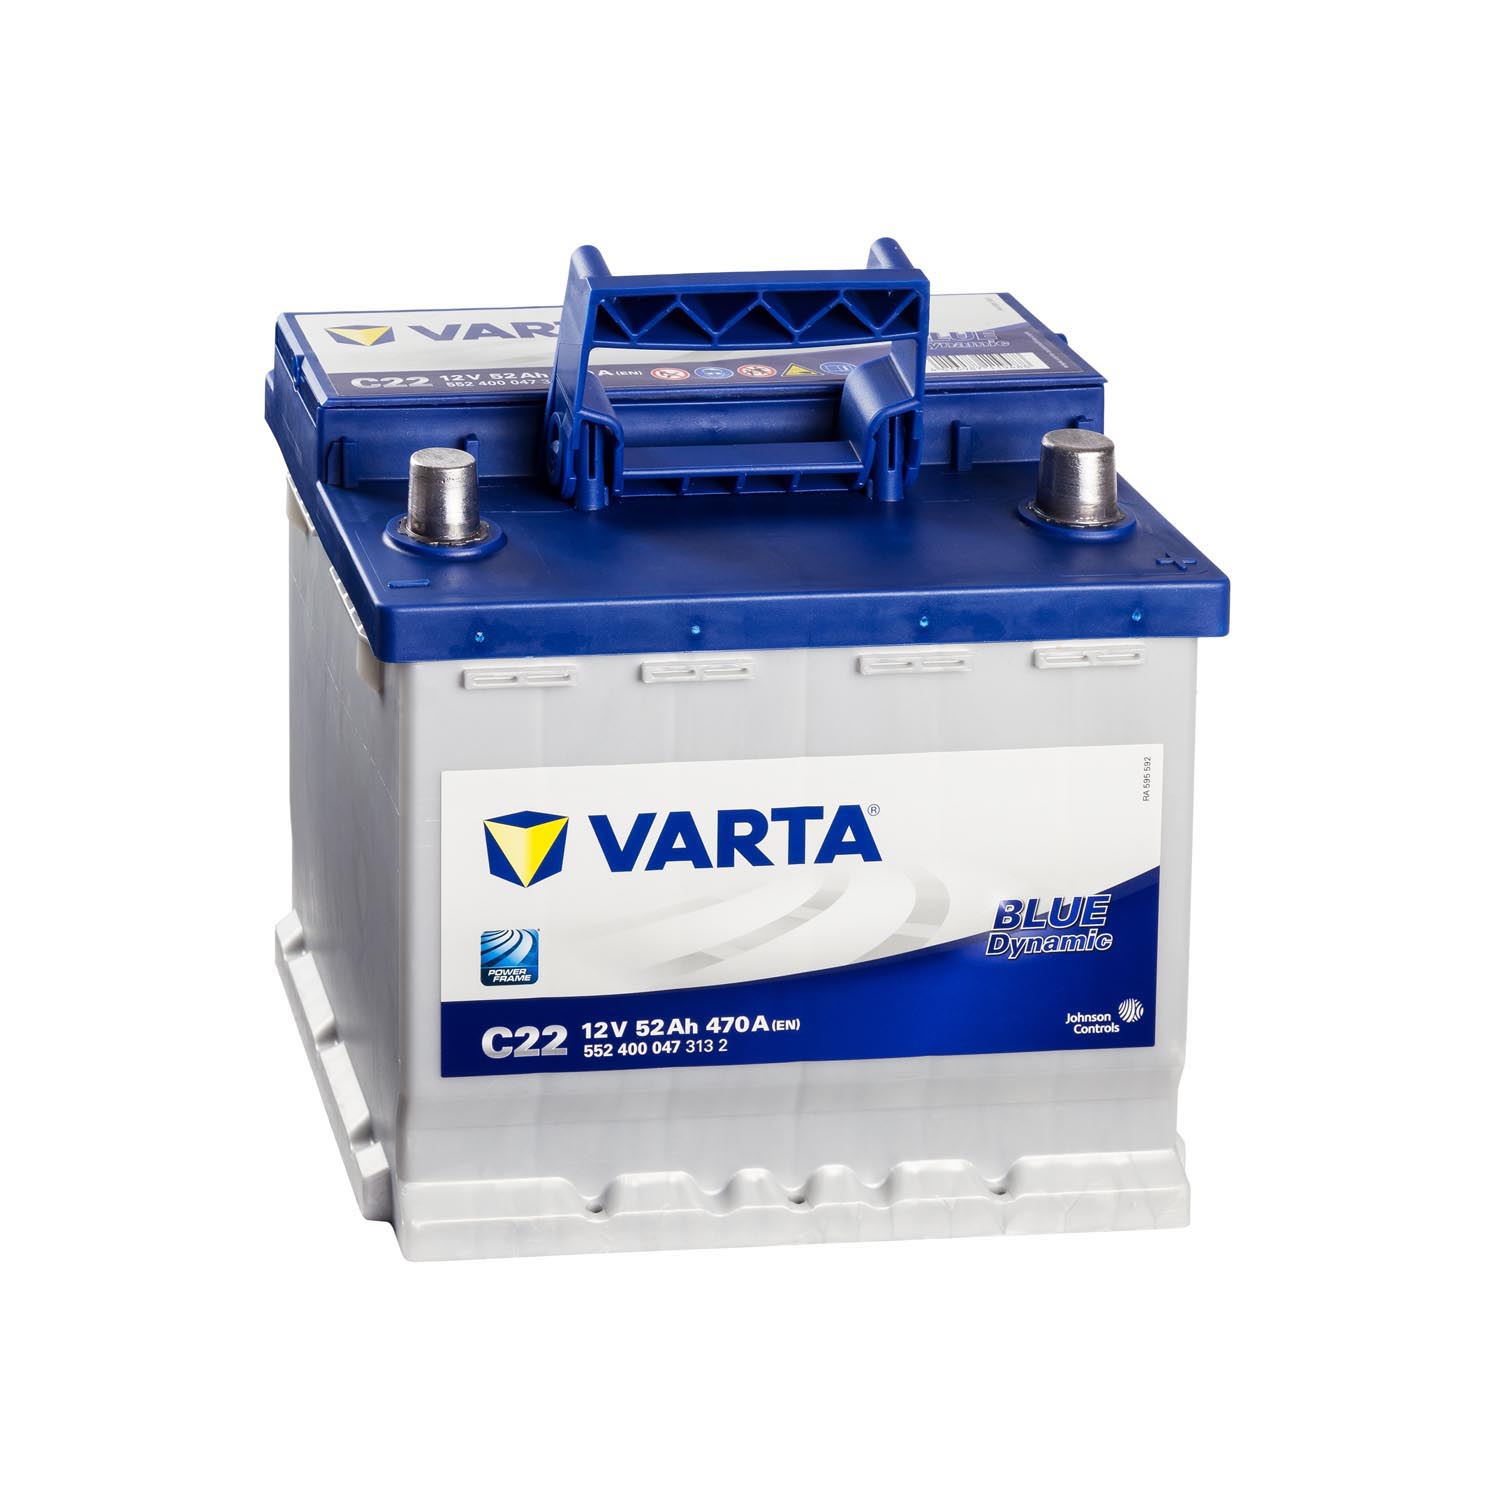 Commentaires en ligne: Varta Blue Dynamic C22 Batterie